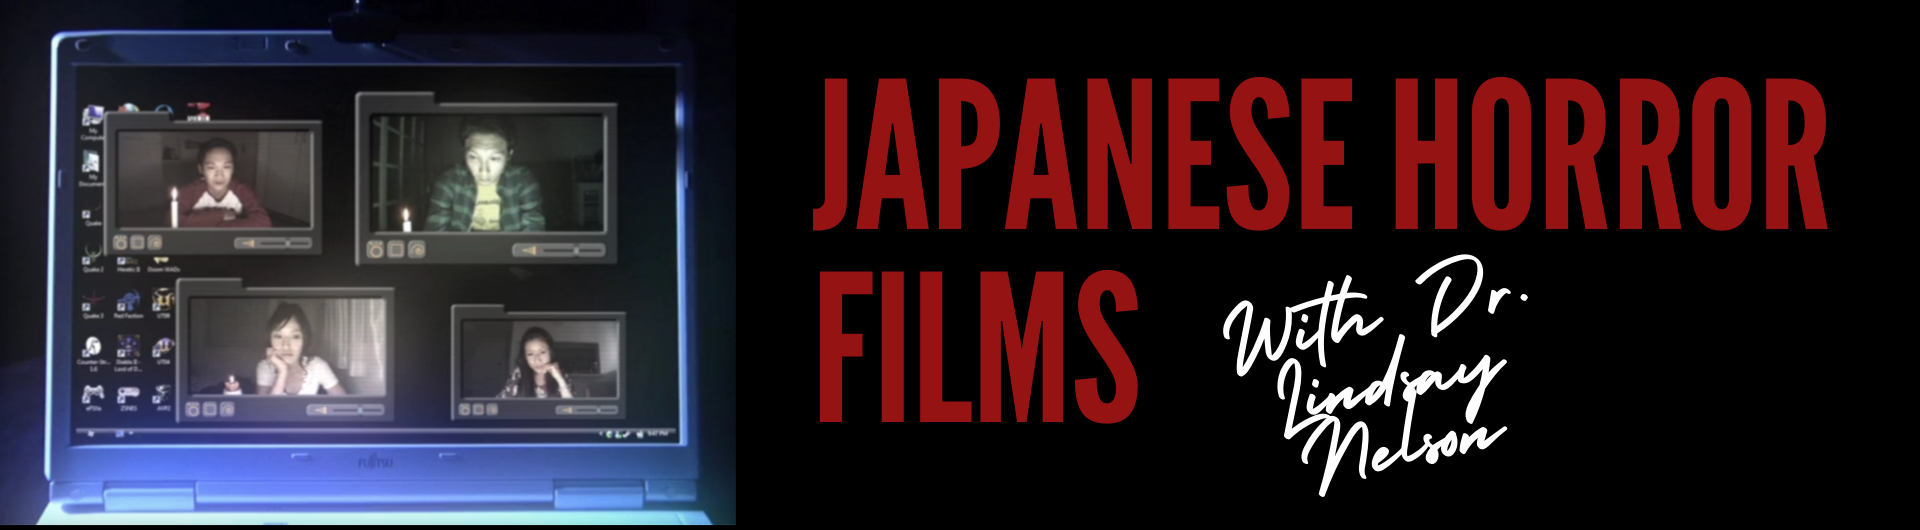 FEA_Japanese Horror Films_Banner